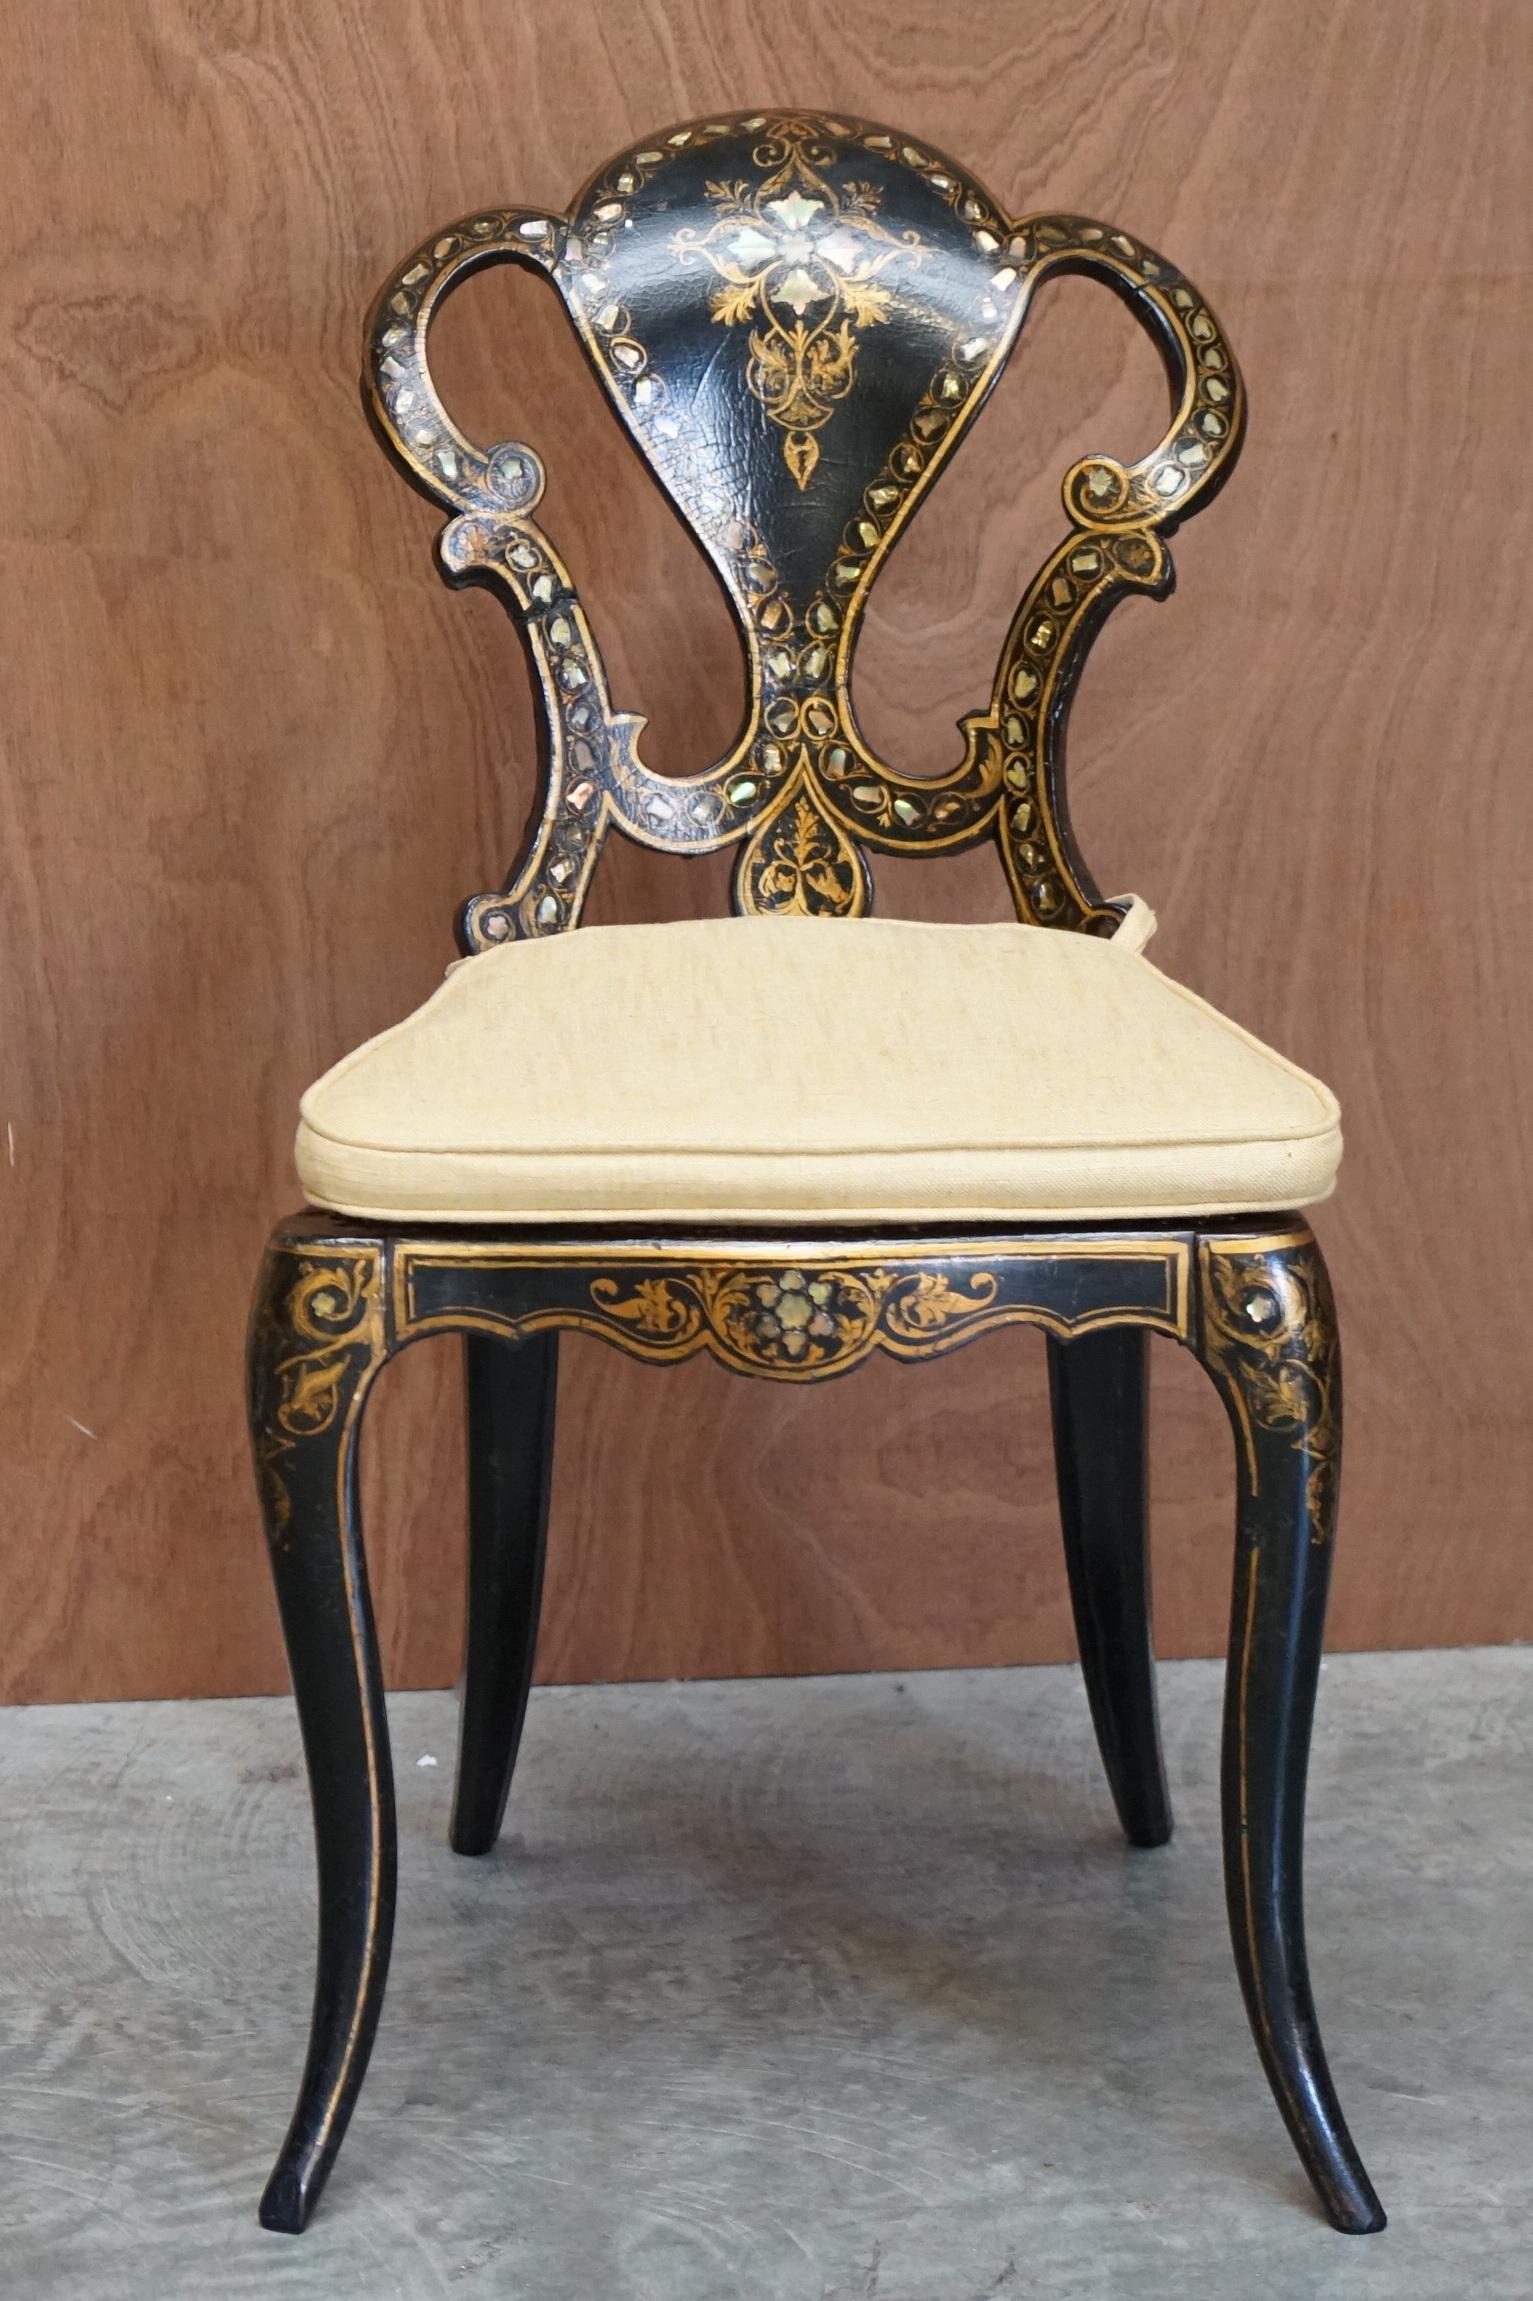 Wir freuen uns, diesen exquisiten, vollständig gestempelten, originalen Regency-Stuhl von Jennens & Bettridge LTD Birmingham aus dem Jahr 1815, der mit Blattgold bemalt ist, zum Verkauf anzubieten

Ein sehr gut aussehender, gut gemachter und